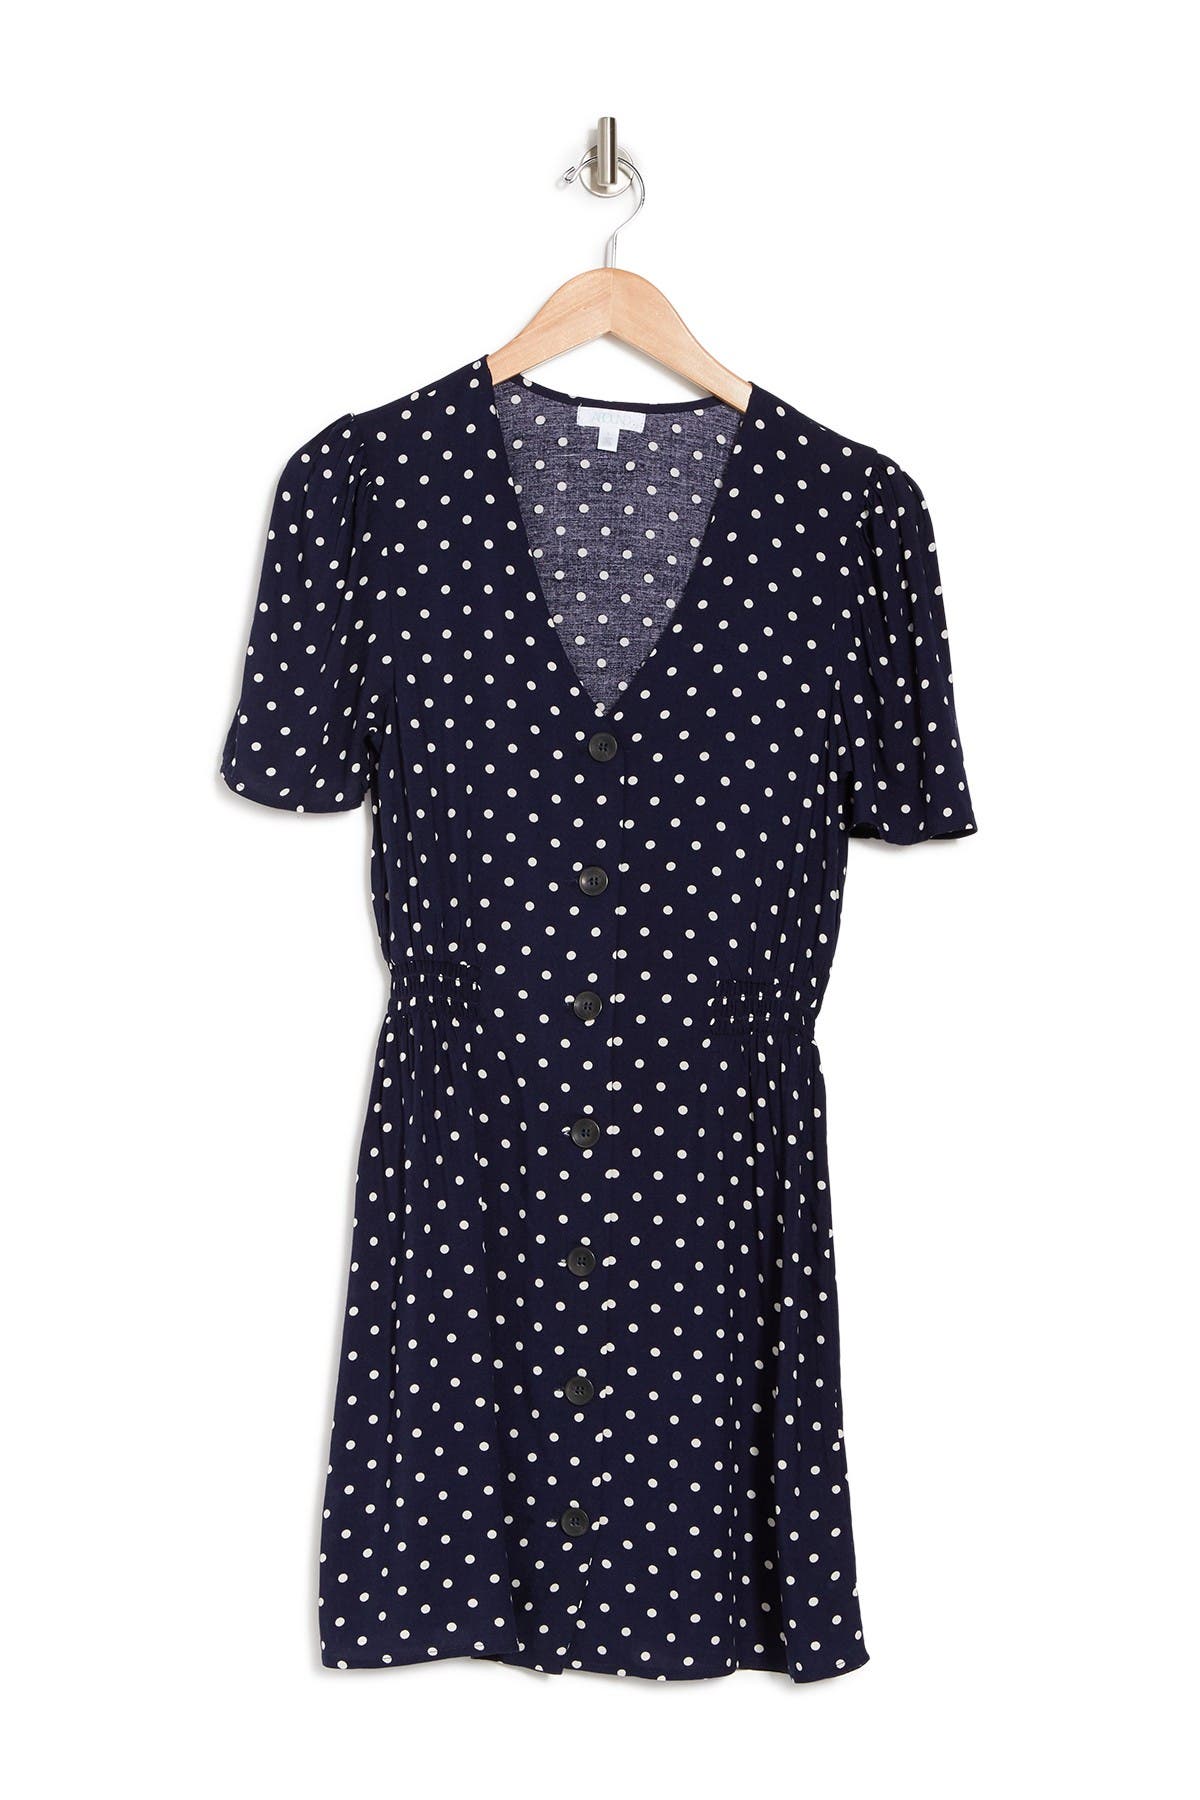 Abound V-neck Short Sleeve Mini Dress In Navy Polka Dot